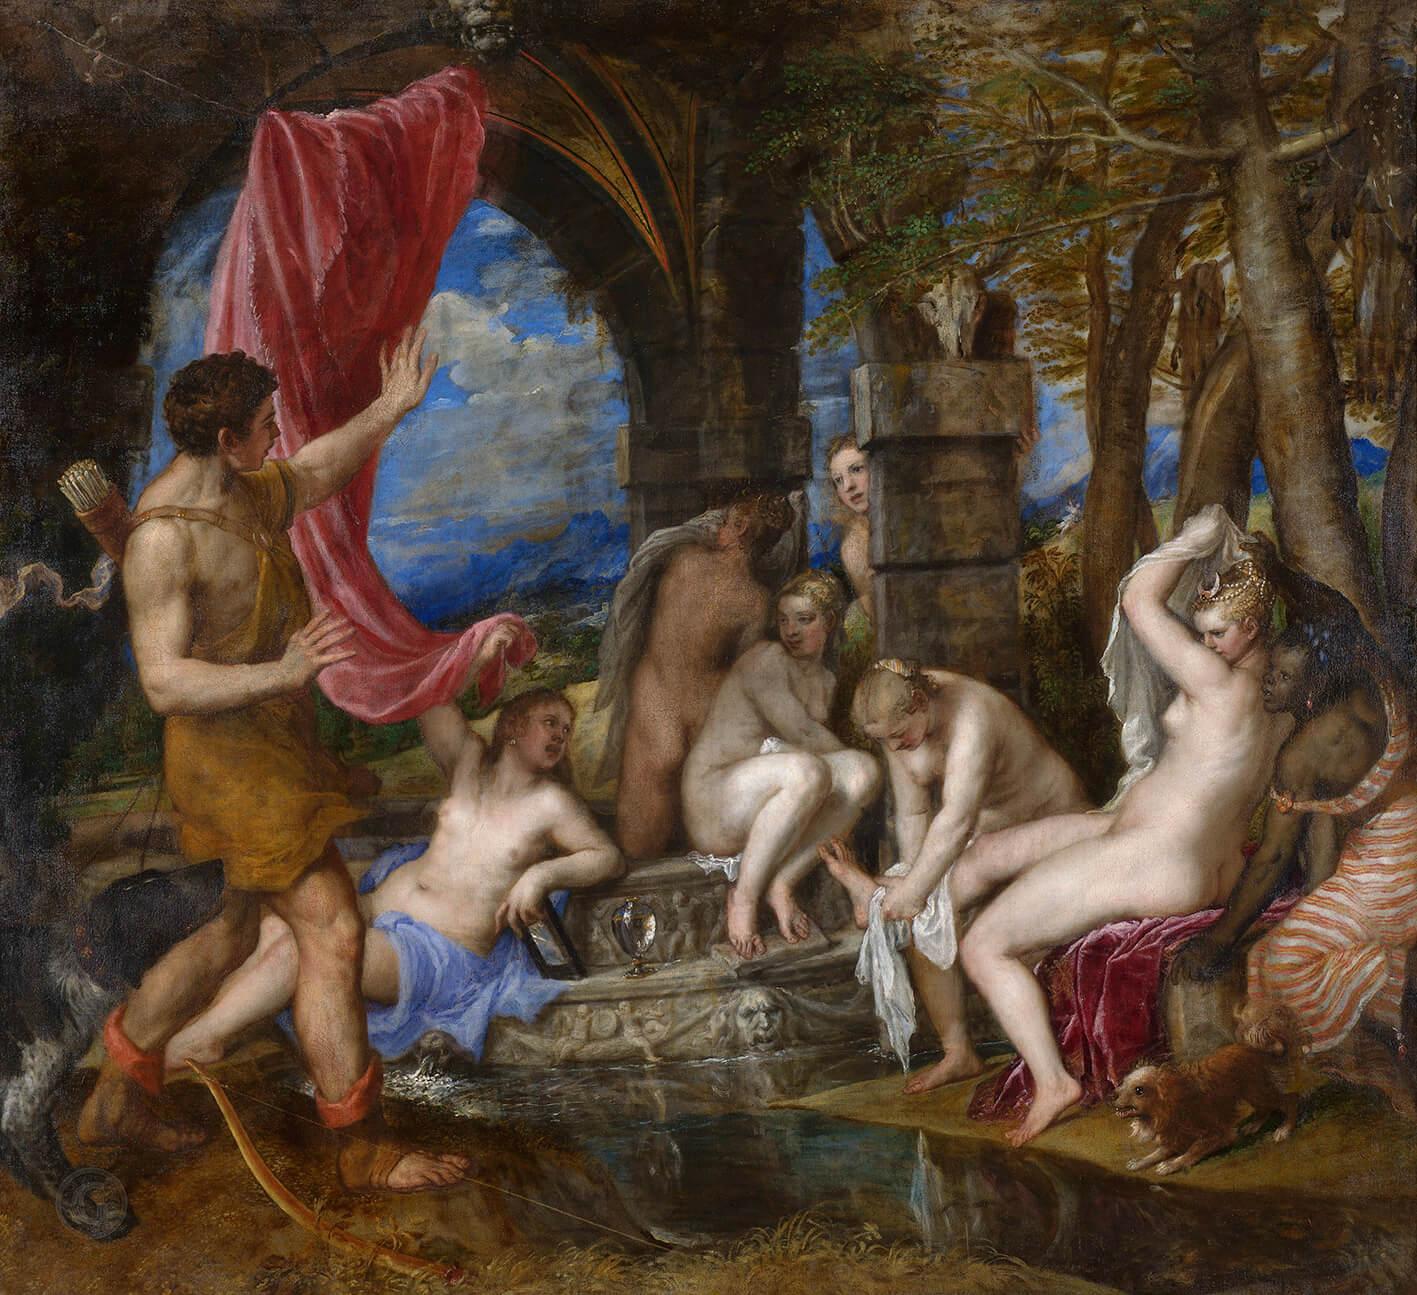 Pilt Titian - Diana kple Actaeon 5